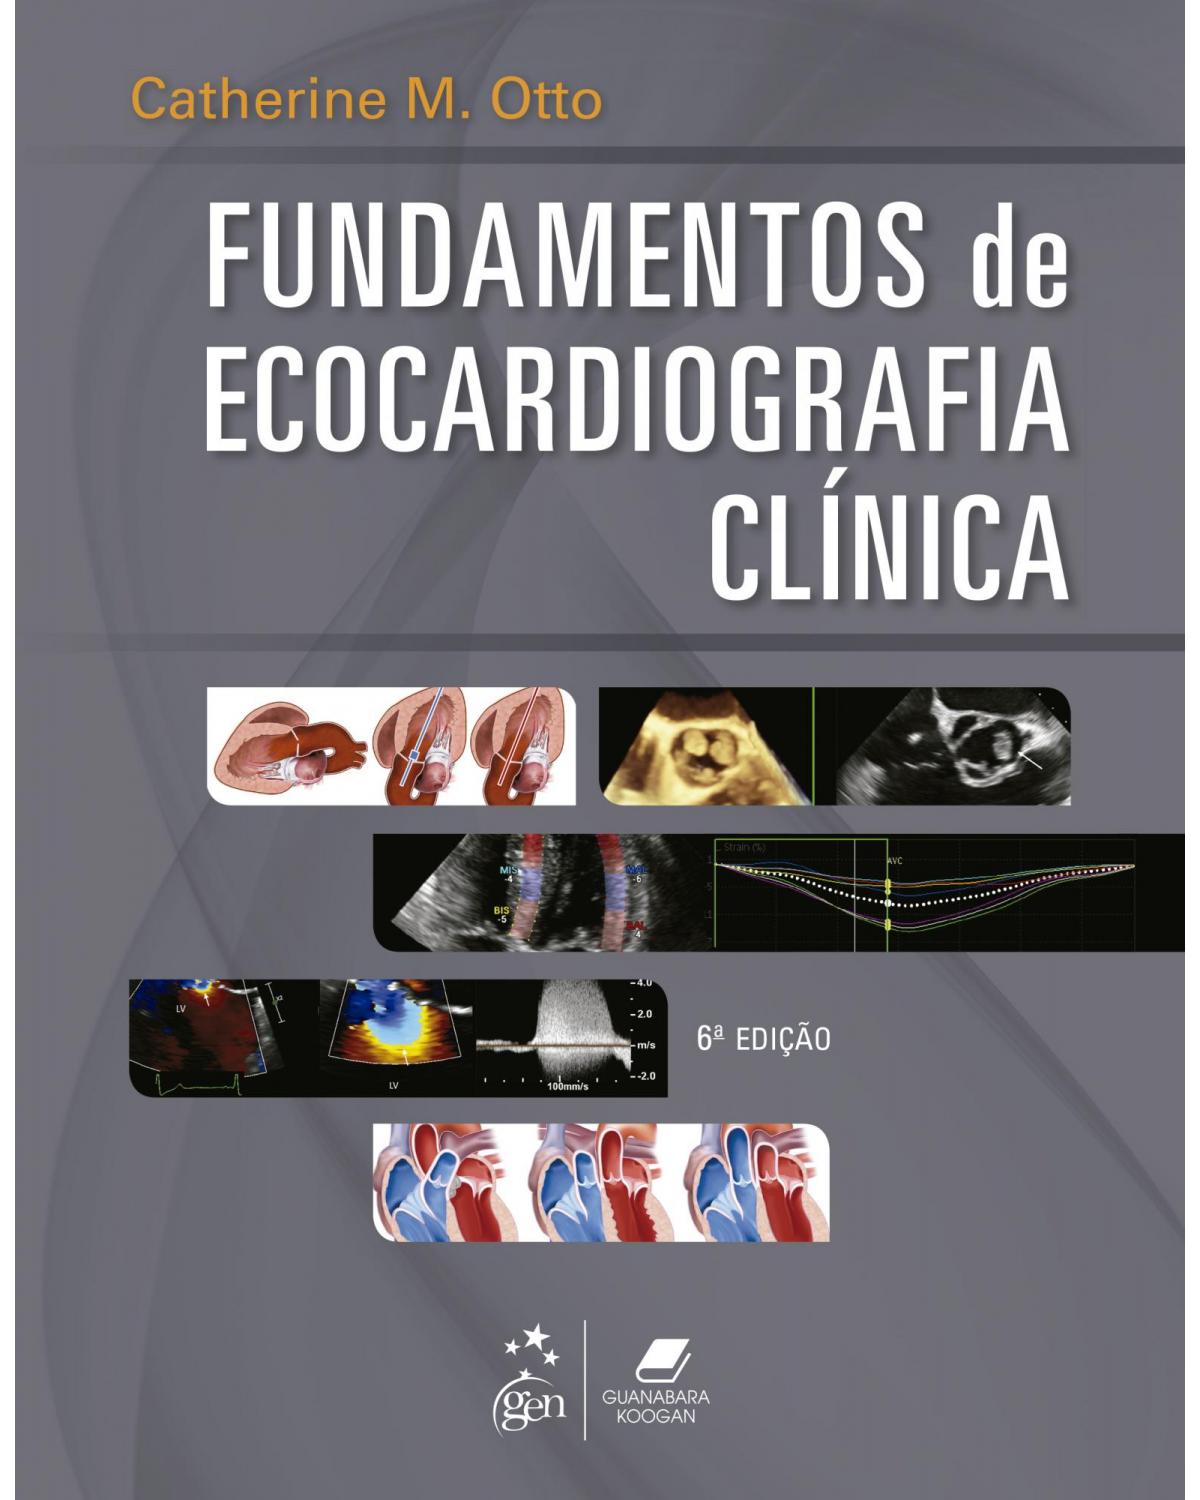 Fundamentos de ecocardiografia clínica - 6ª Edição | 2021